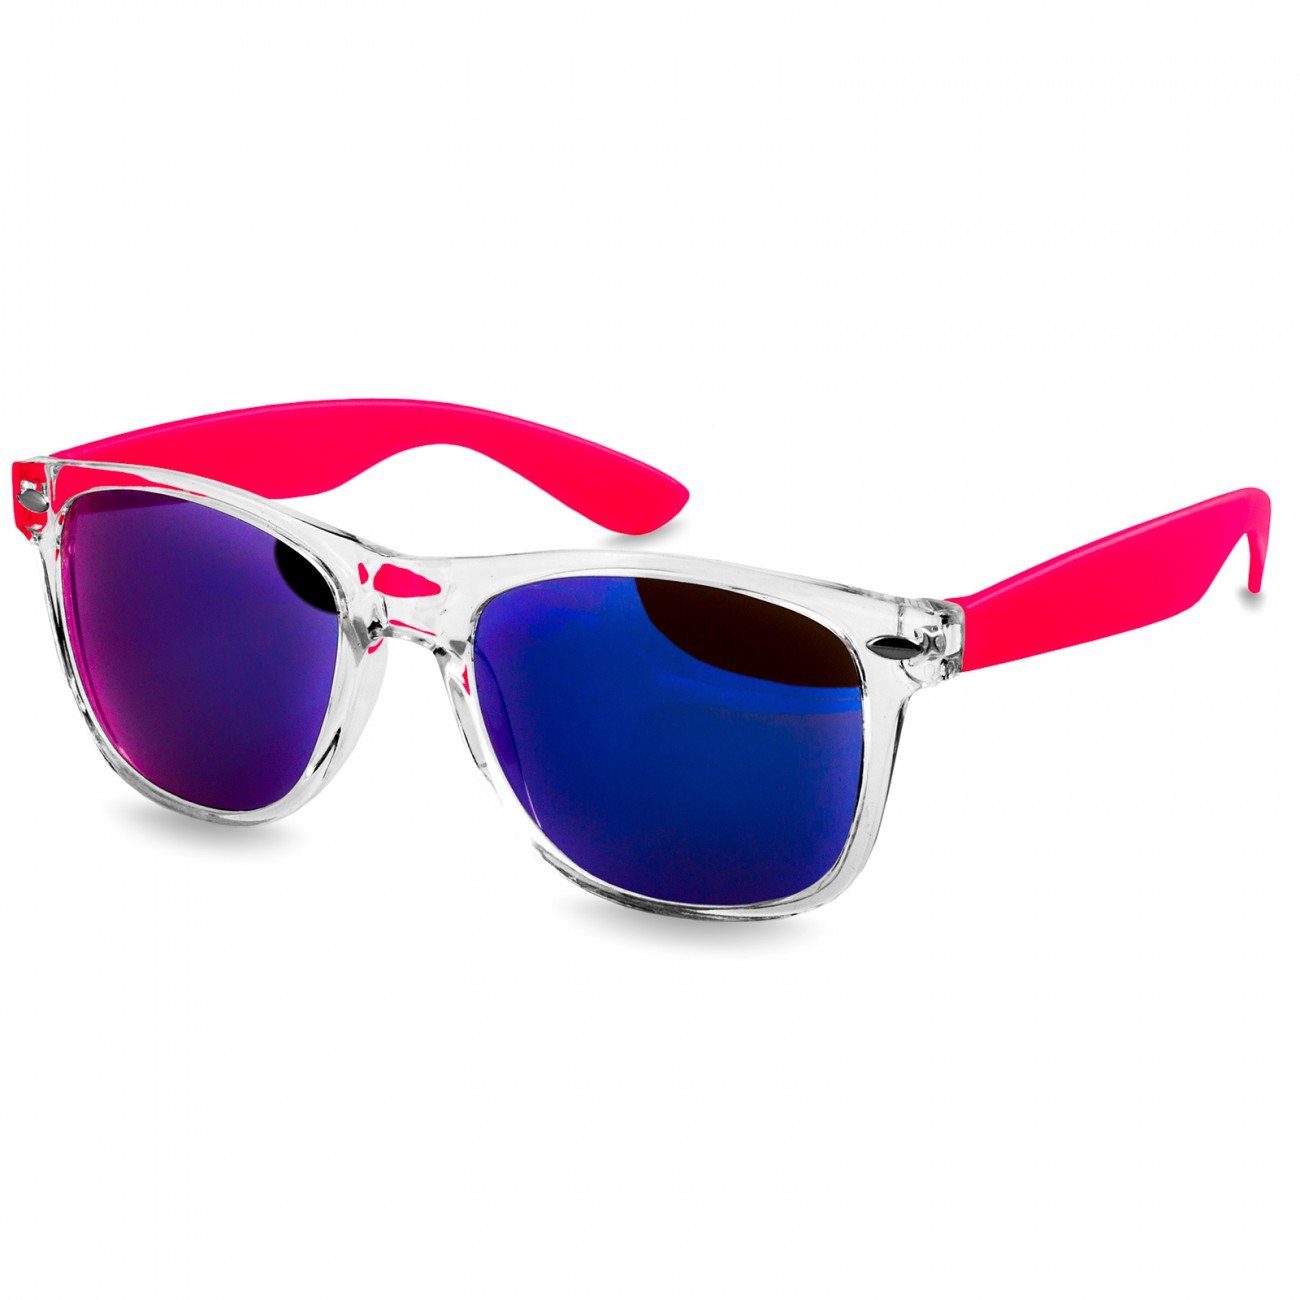 RETRO Caspar Sonnenbrille Designbrille SG017 Damen / blau pink verspiegelt